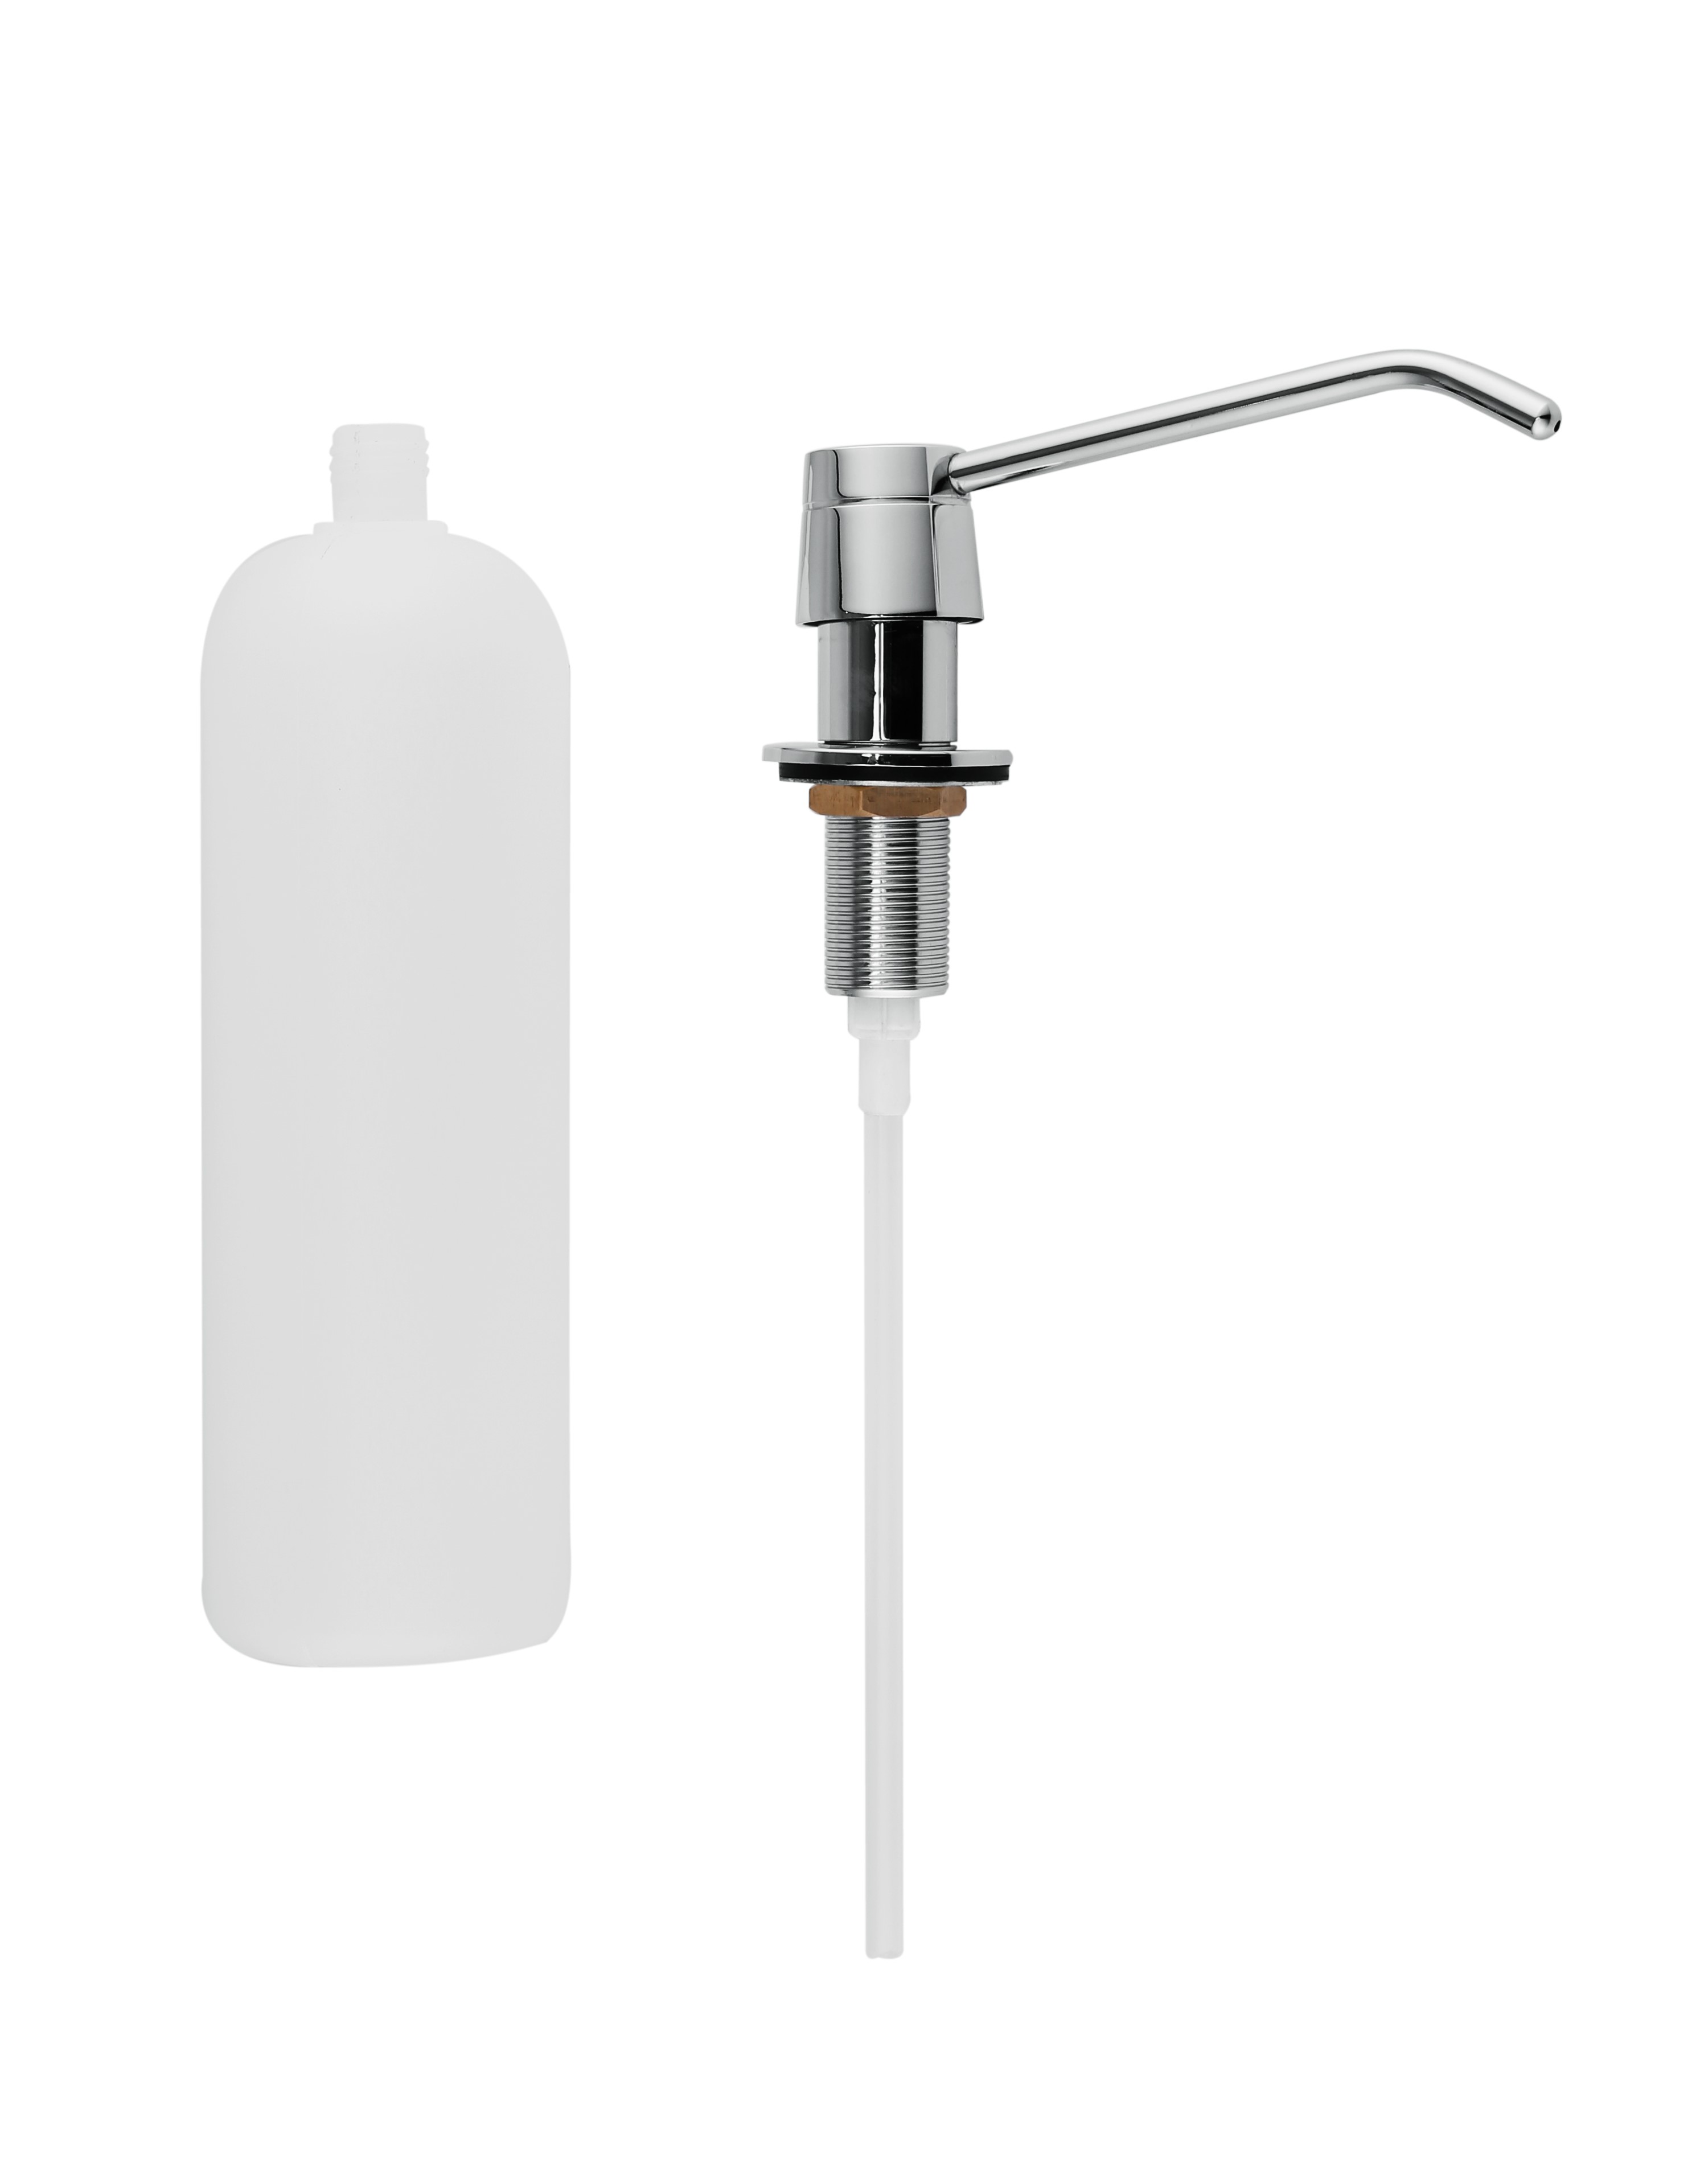 1000ml Plastic Basin Sink Soap Dispenser